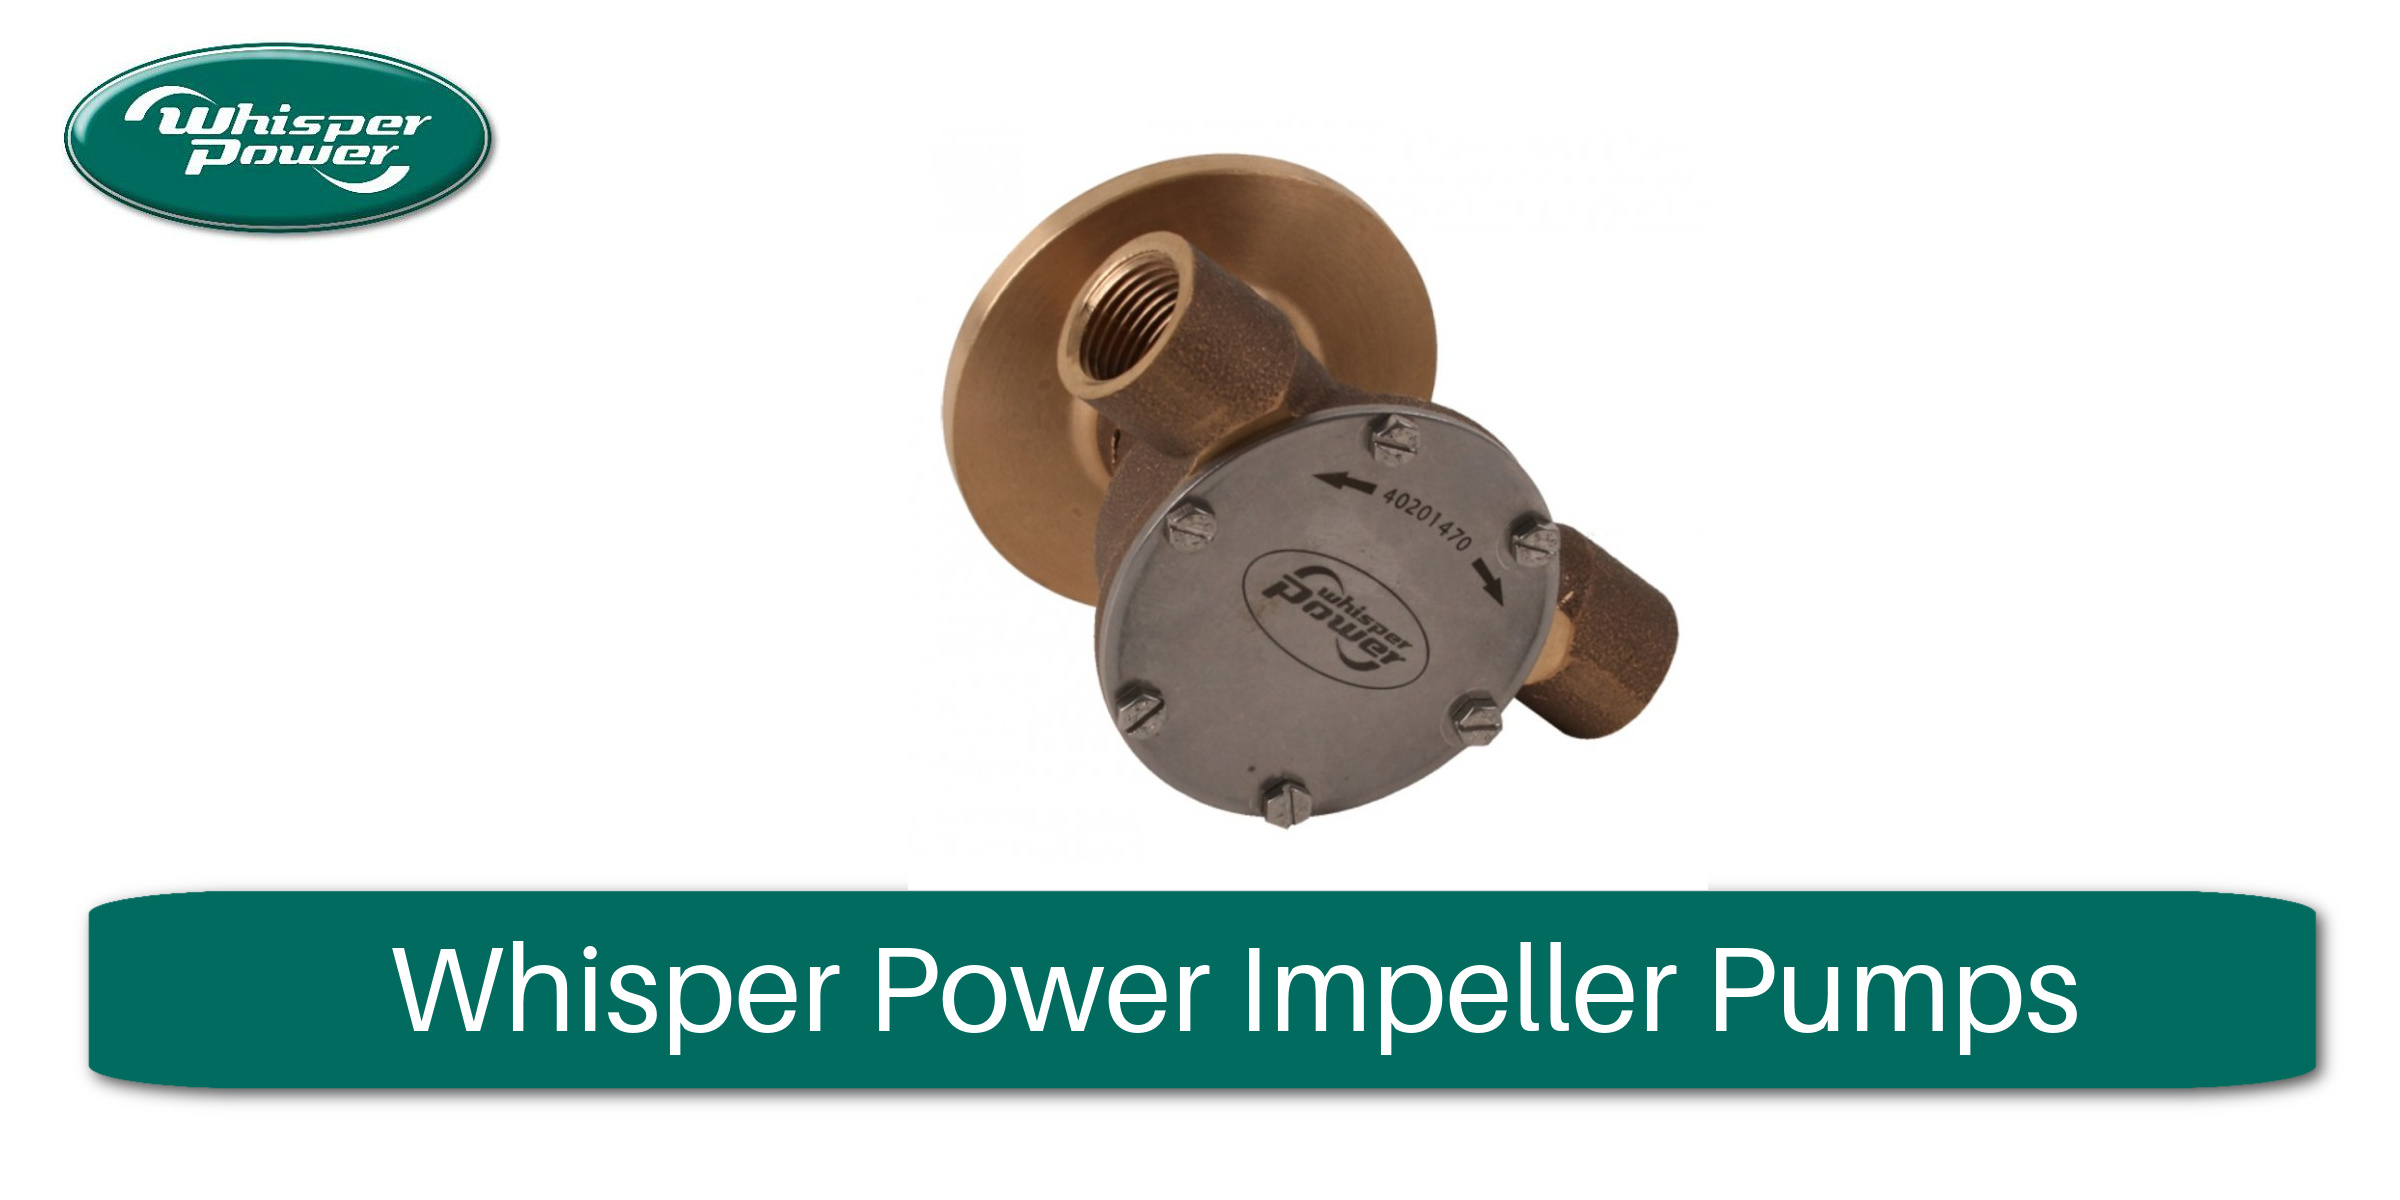 Whisper Power Impeller Pumps